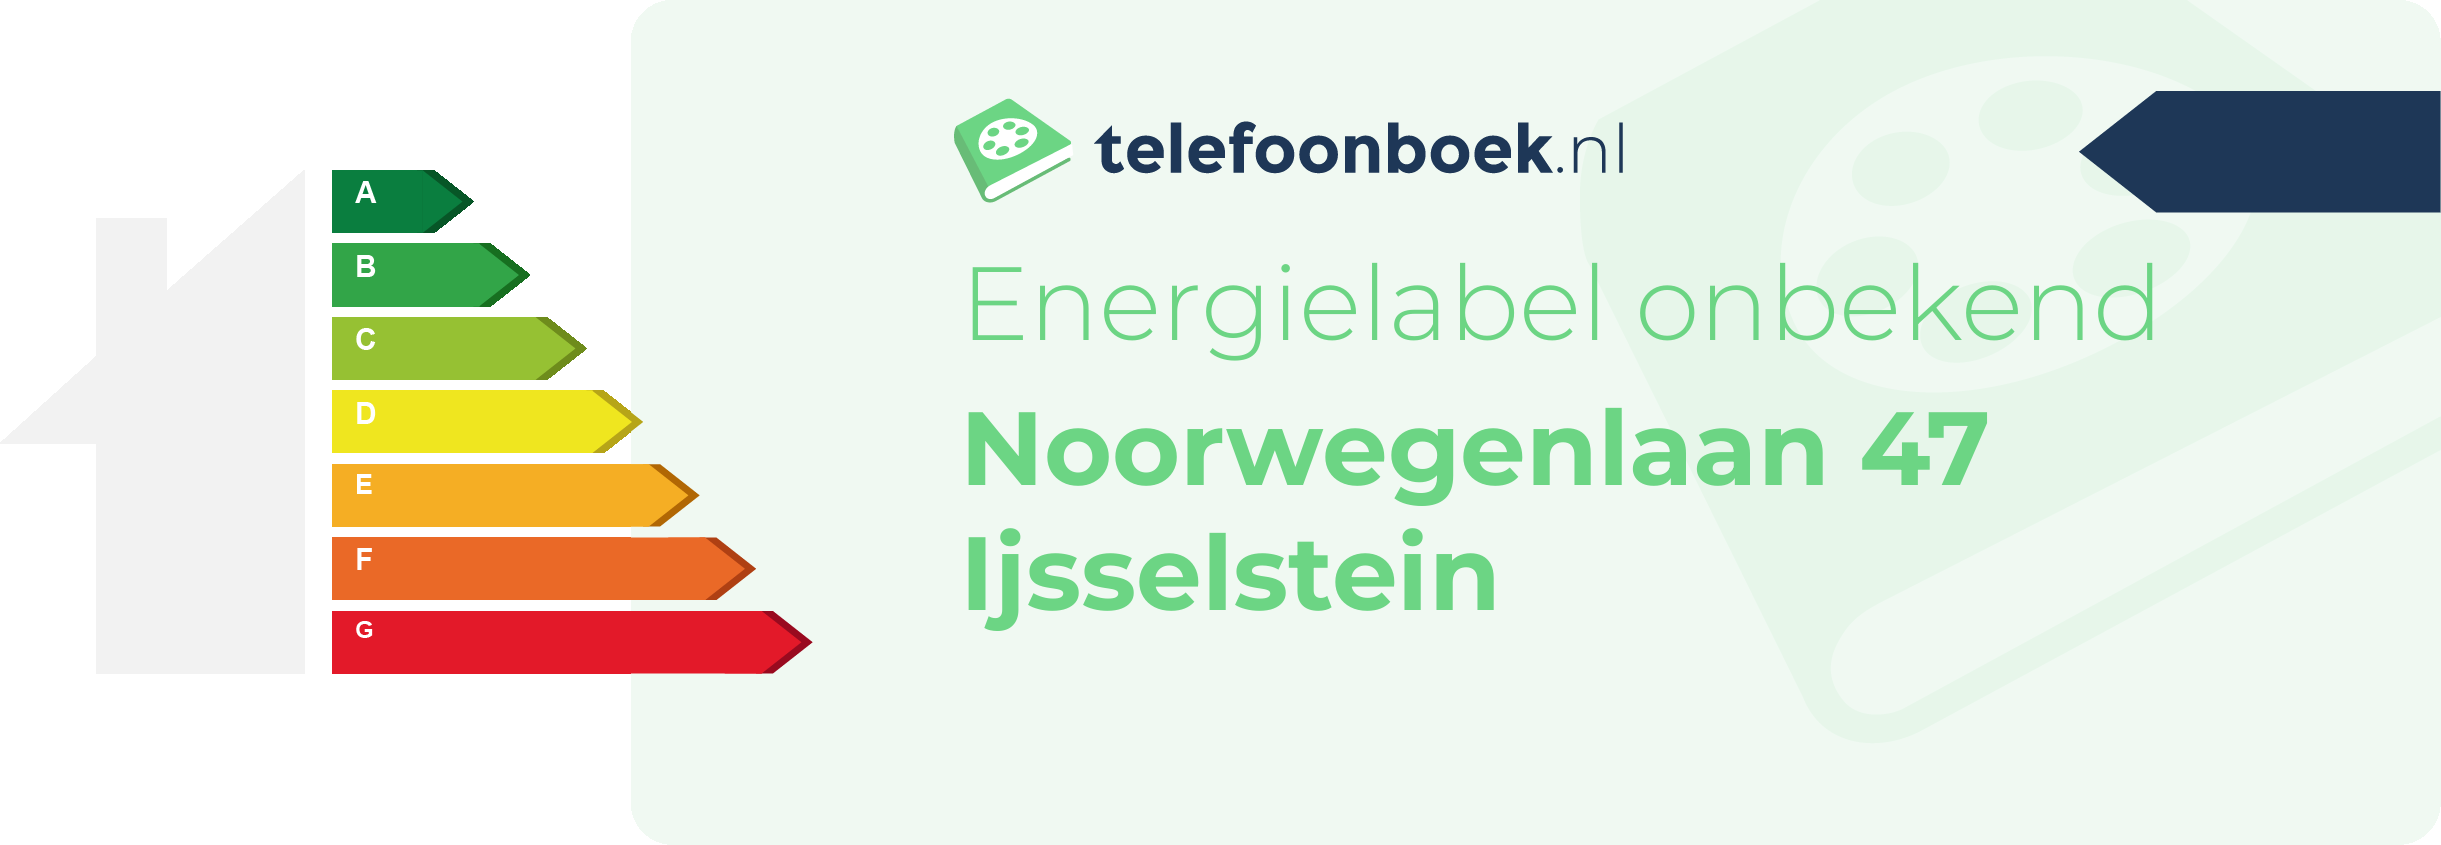 Energielabel Noorwegenlaan 47 Ijsselstein